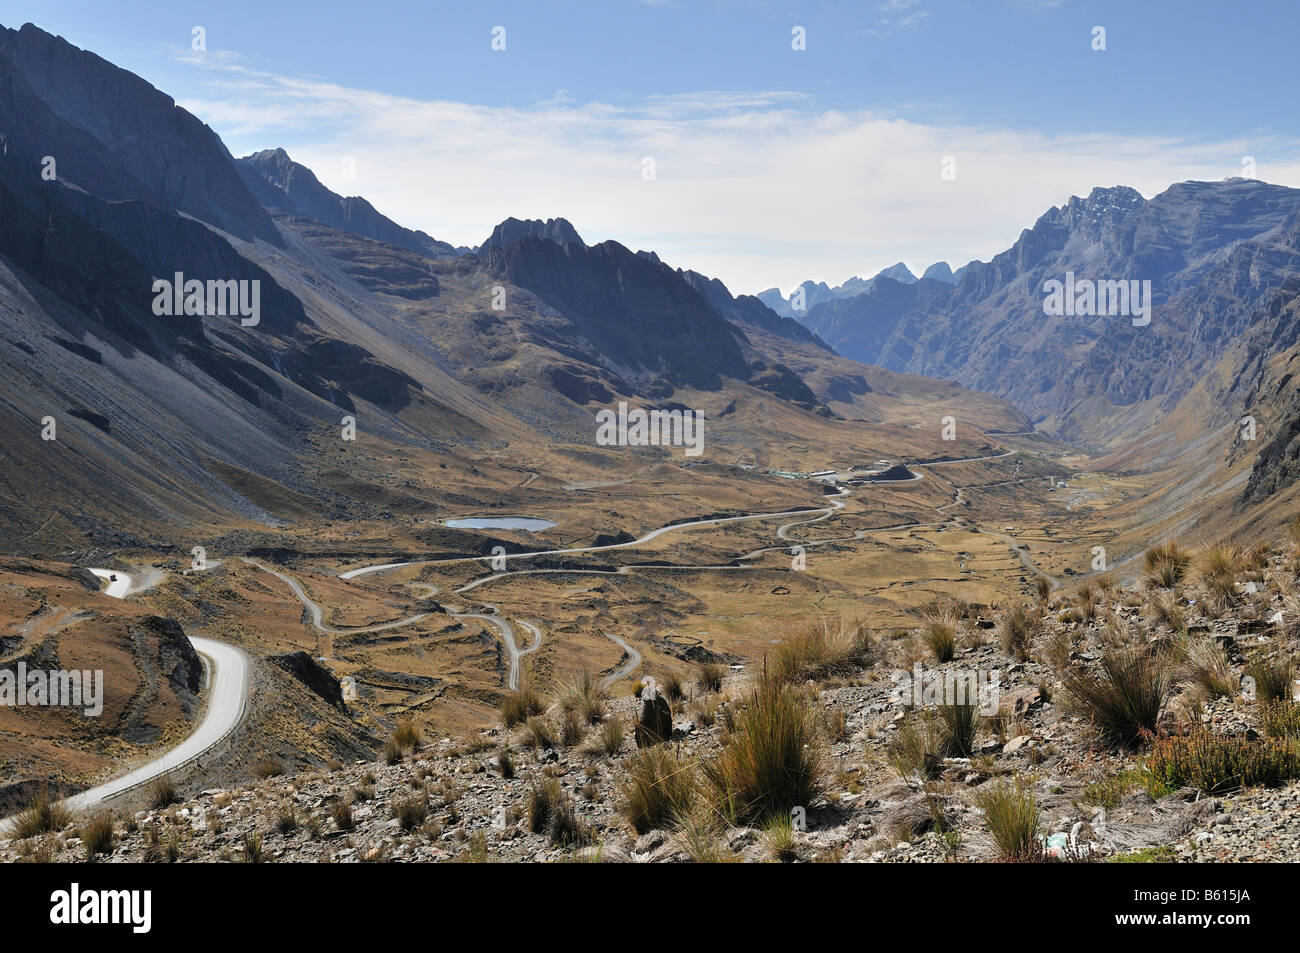 Paysage dans les Andes avec Deathroad, Altiplano, La Paz, Bolivie, Amérique du Sud Banque D'Images